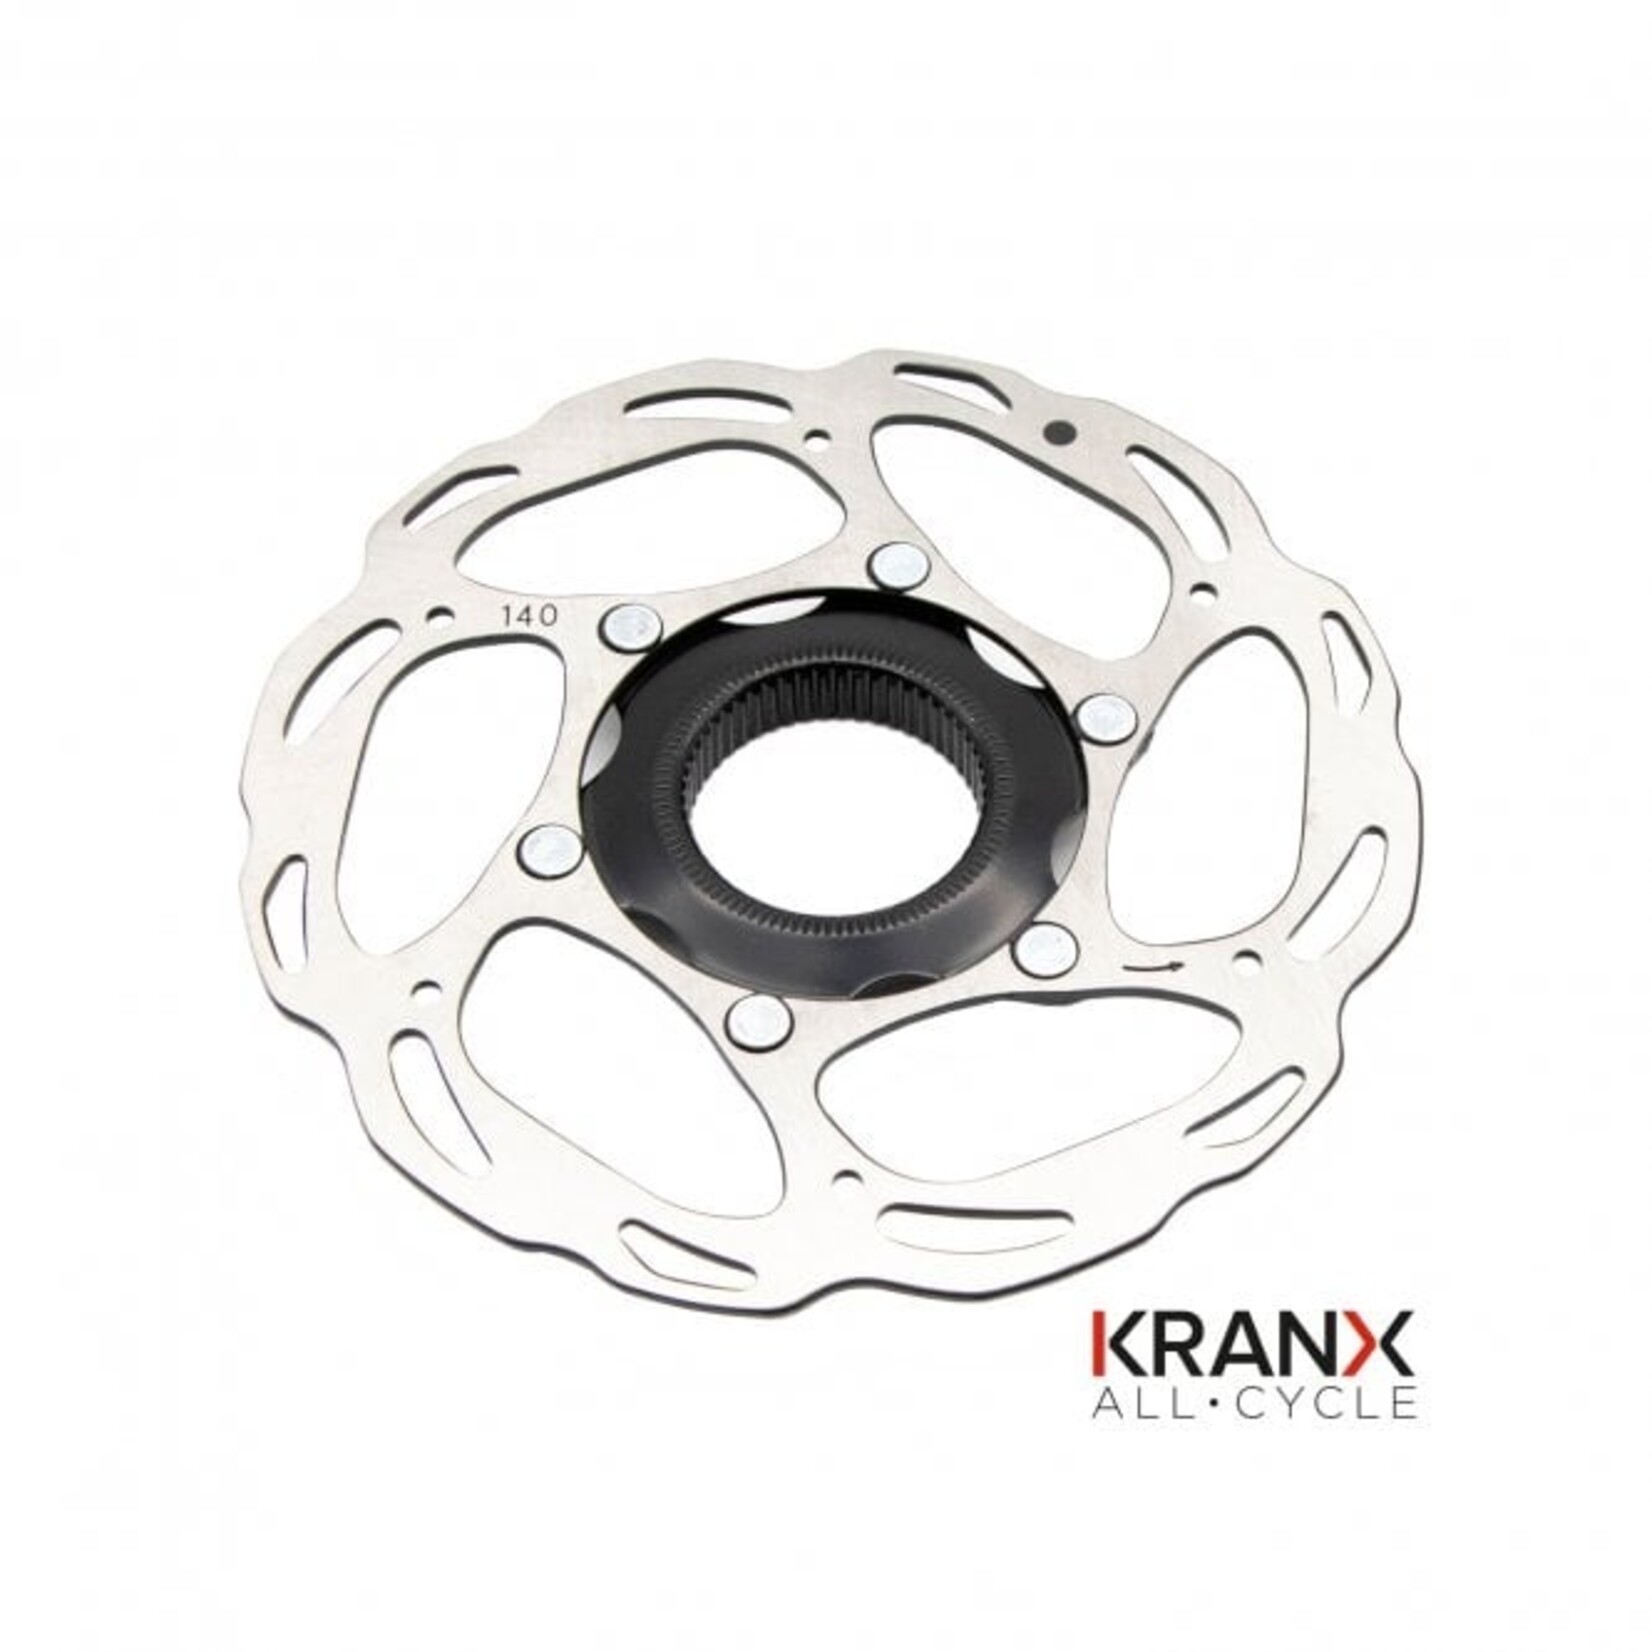 KRANX KranX Centre Lock Rotor - 140mm